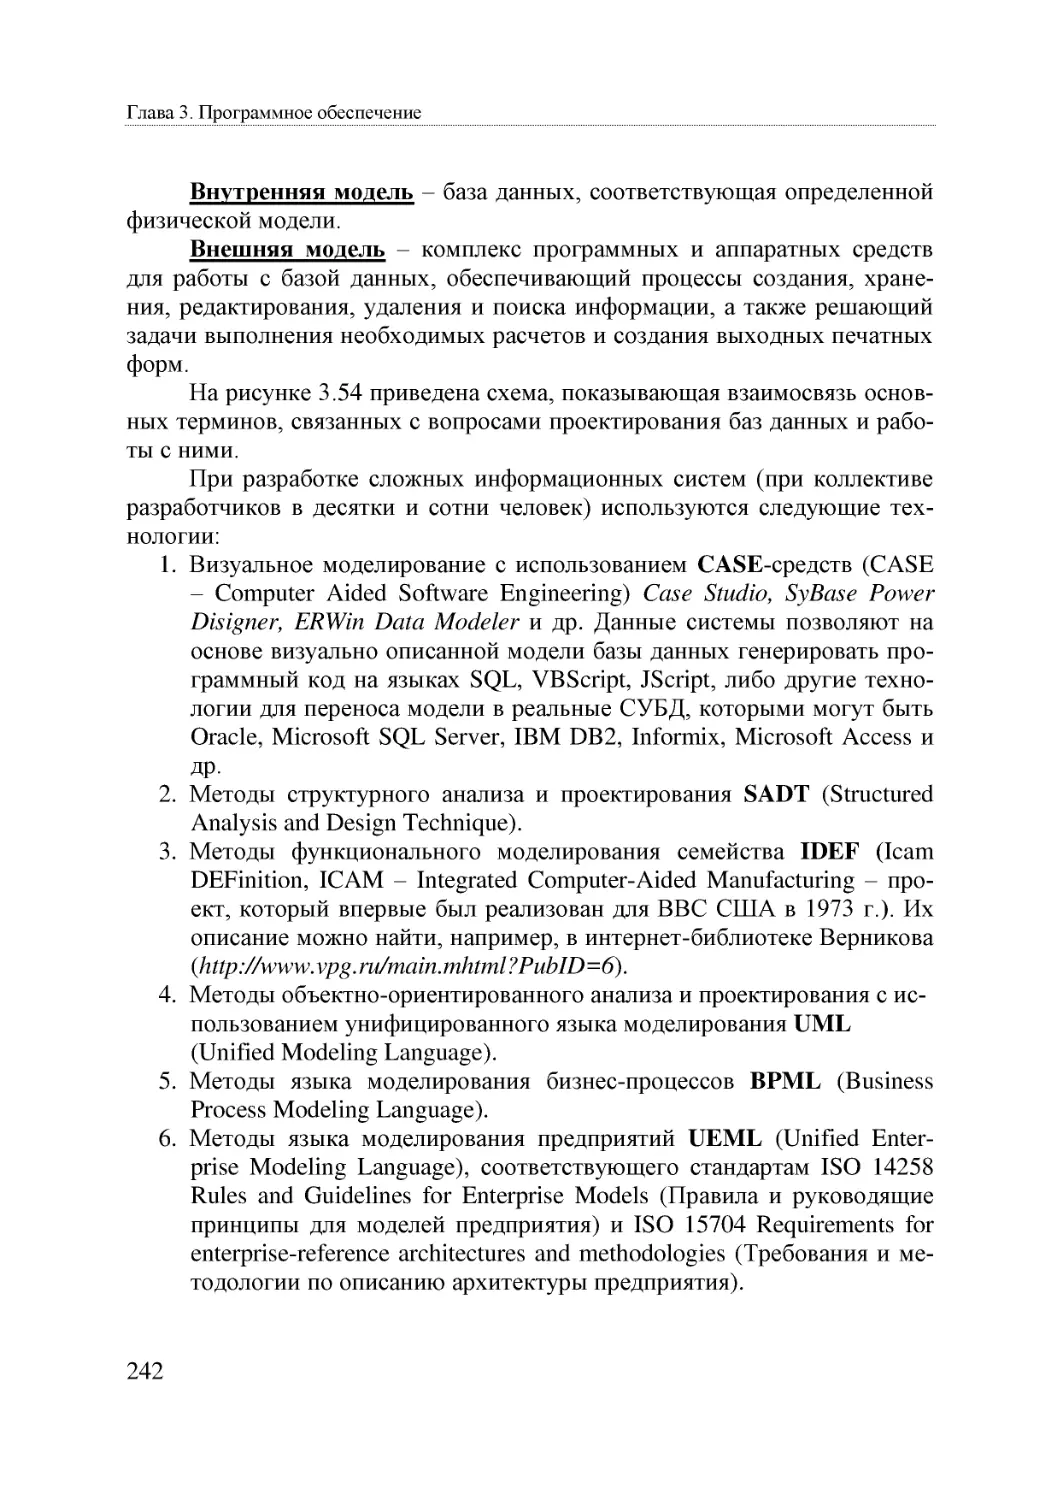 Informatika_Uchebnik_dlya_vuzov_2010 242